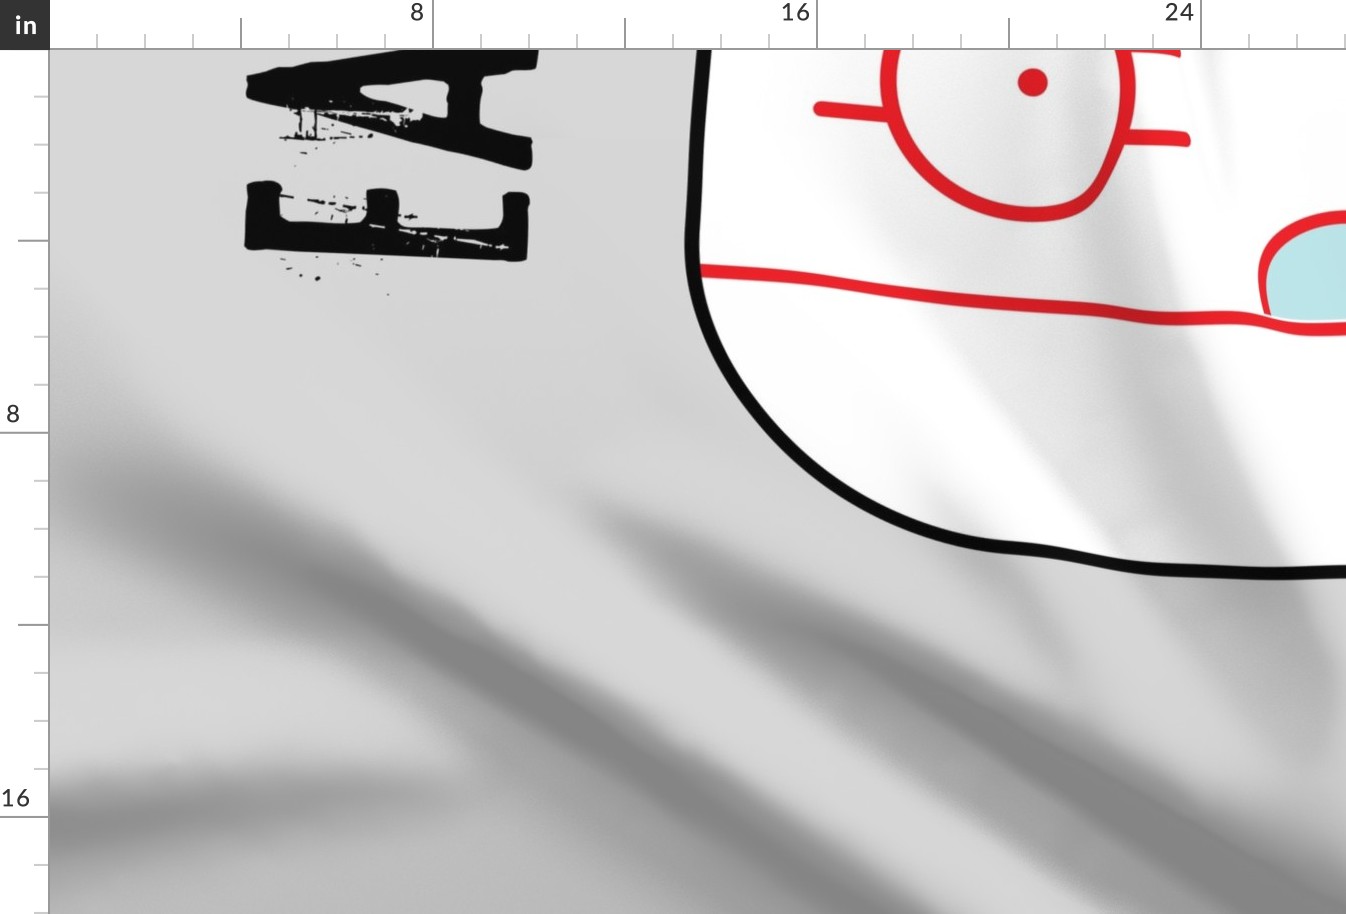 (54" width - 2 yard panel) Eat. Sleep. Hockey. - Ice Hockey Rink - Grey LAD19BS